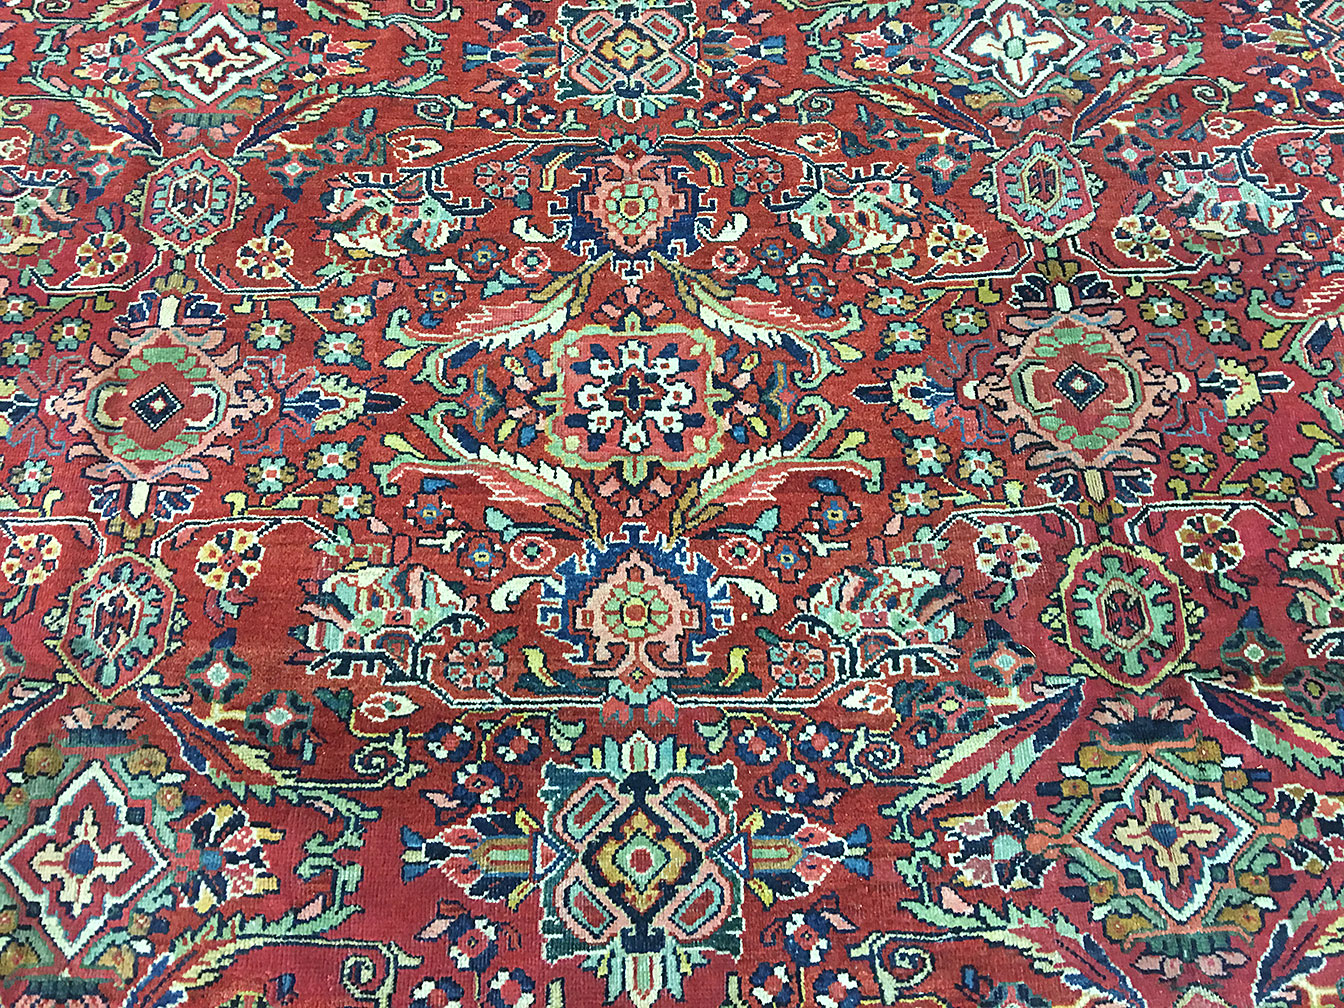 Antique mahal Carpet - # 52480